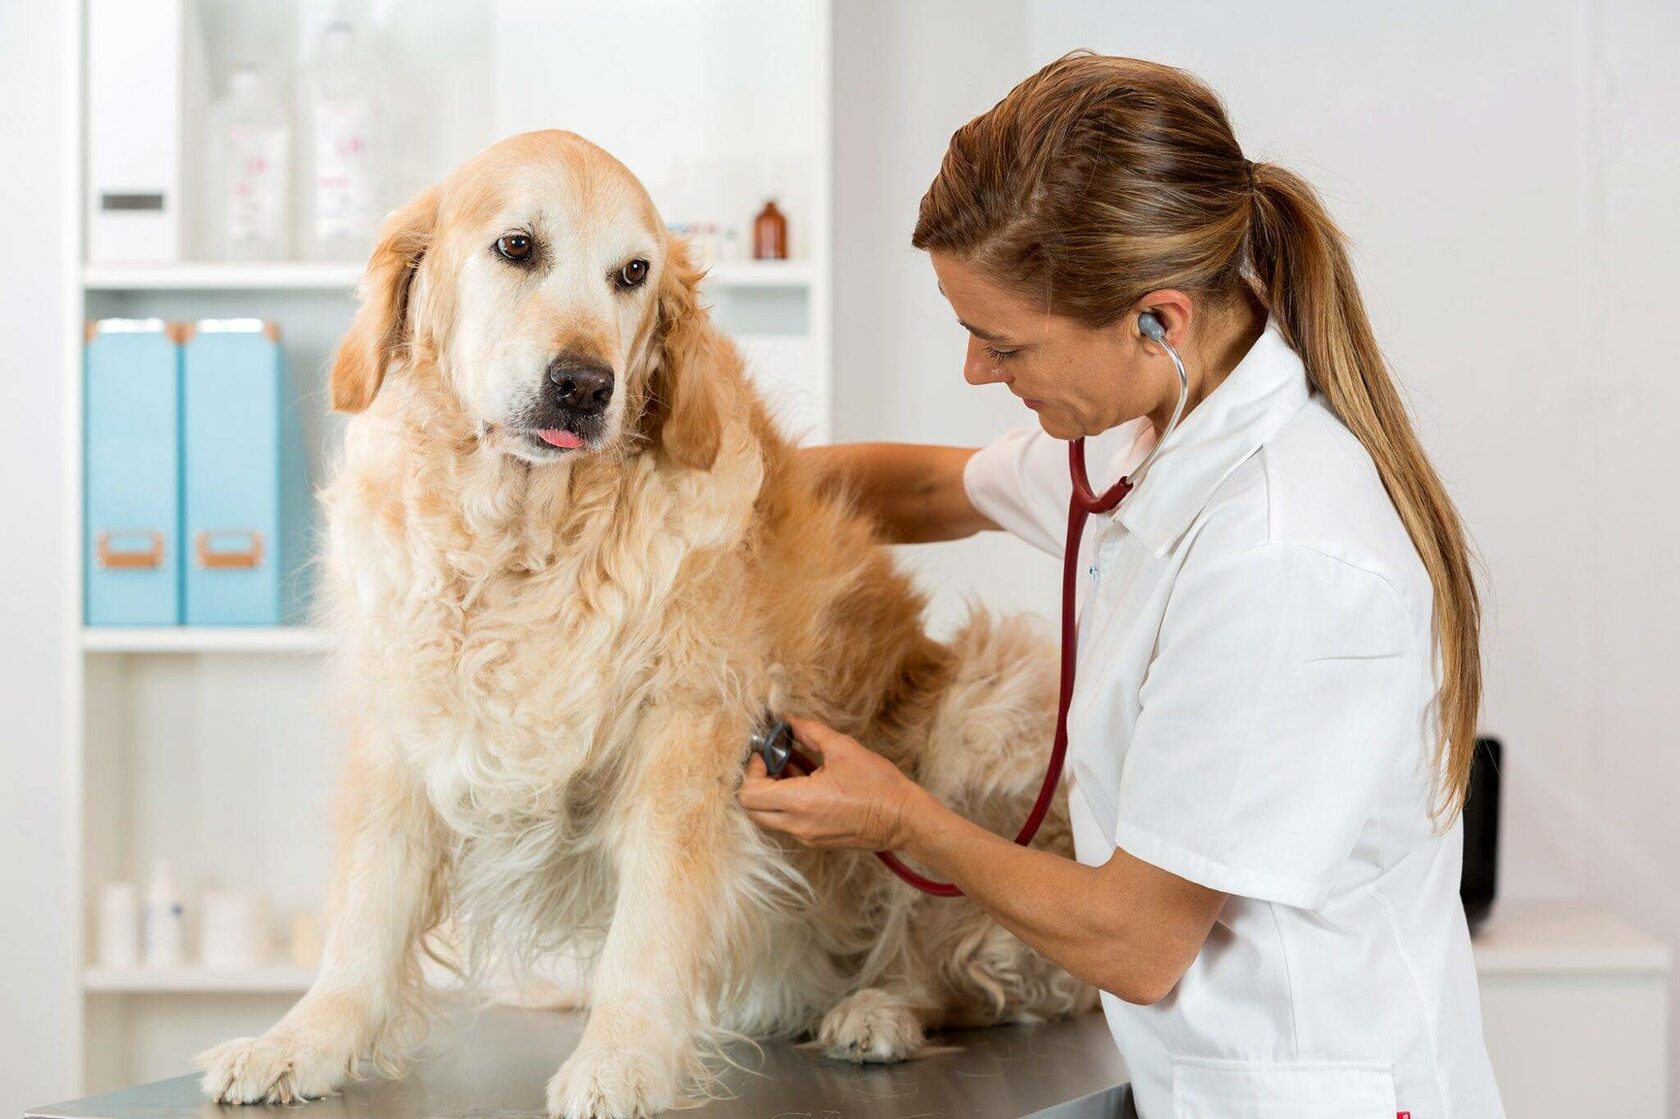 рентген собаке, сделать рентген собаке, рентген собаке цена, рентген лапы собаки, где сделать рентген собаке, сколько стоит рентген собаки, рентген легких у собаки, где можно сделать рентген собаке, рентген снимки собаки, как делают рентген собаке, рентге